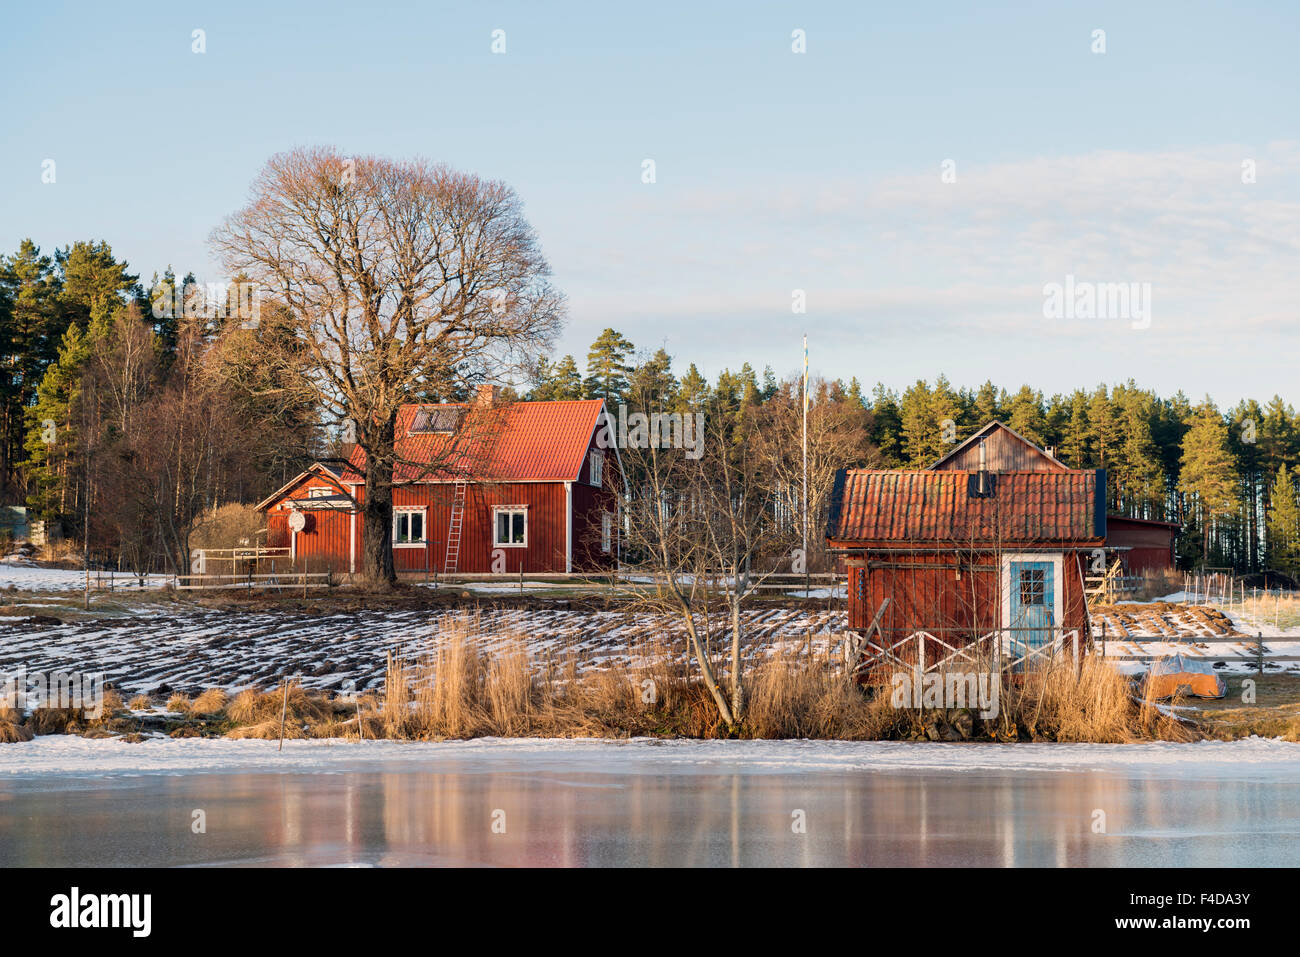 Farmhouse, Sweden Stock Photo